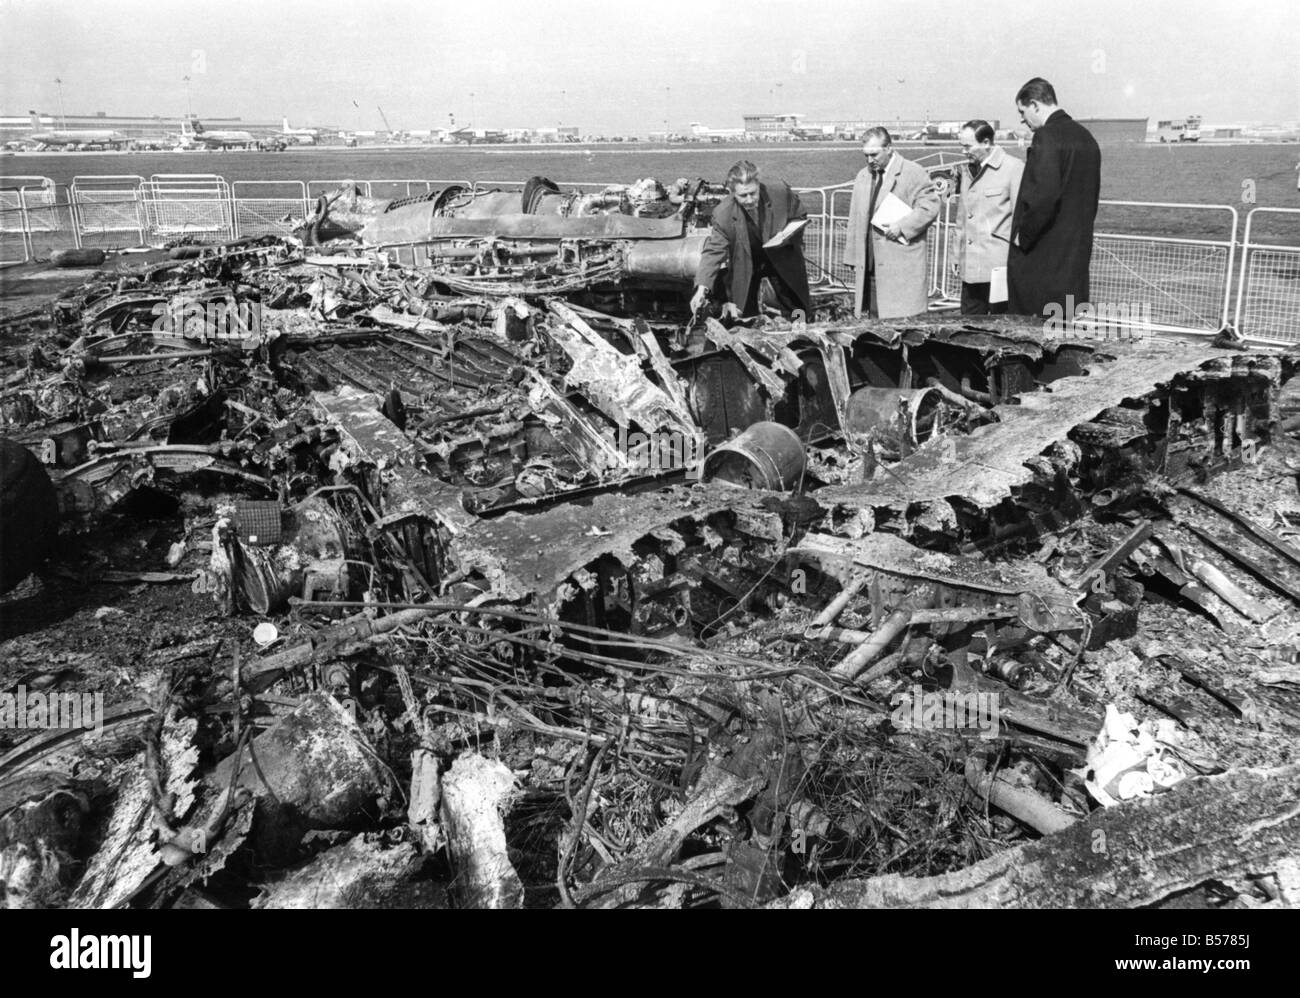 Es werden keine Bereinigung Operation am Londoner Flughafen Heathrow folgenden Montages (04.08.68) Absturz BOAC Boeing 707. Nicht für eine Weile jedenfalls. Teile des Wracks sind eingezäunt und bewacht, bis die Experten über jedes Stück Draht, jedes Bit der verworrenen Metall gegangen, was den Unfall verursacht zu finden. April 1968 P004385 Stockfoto